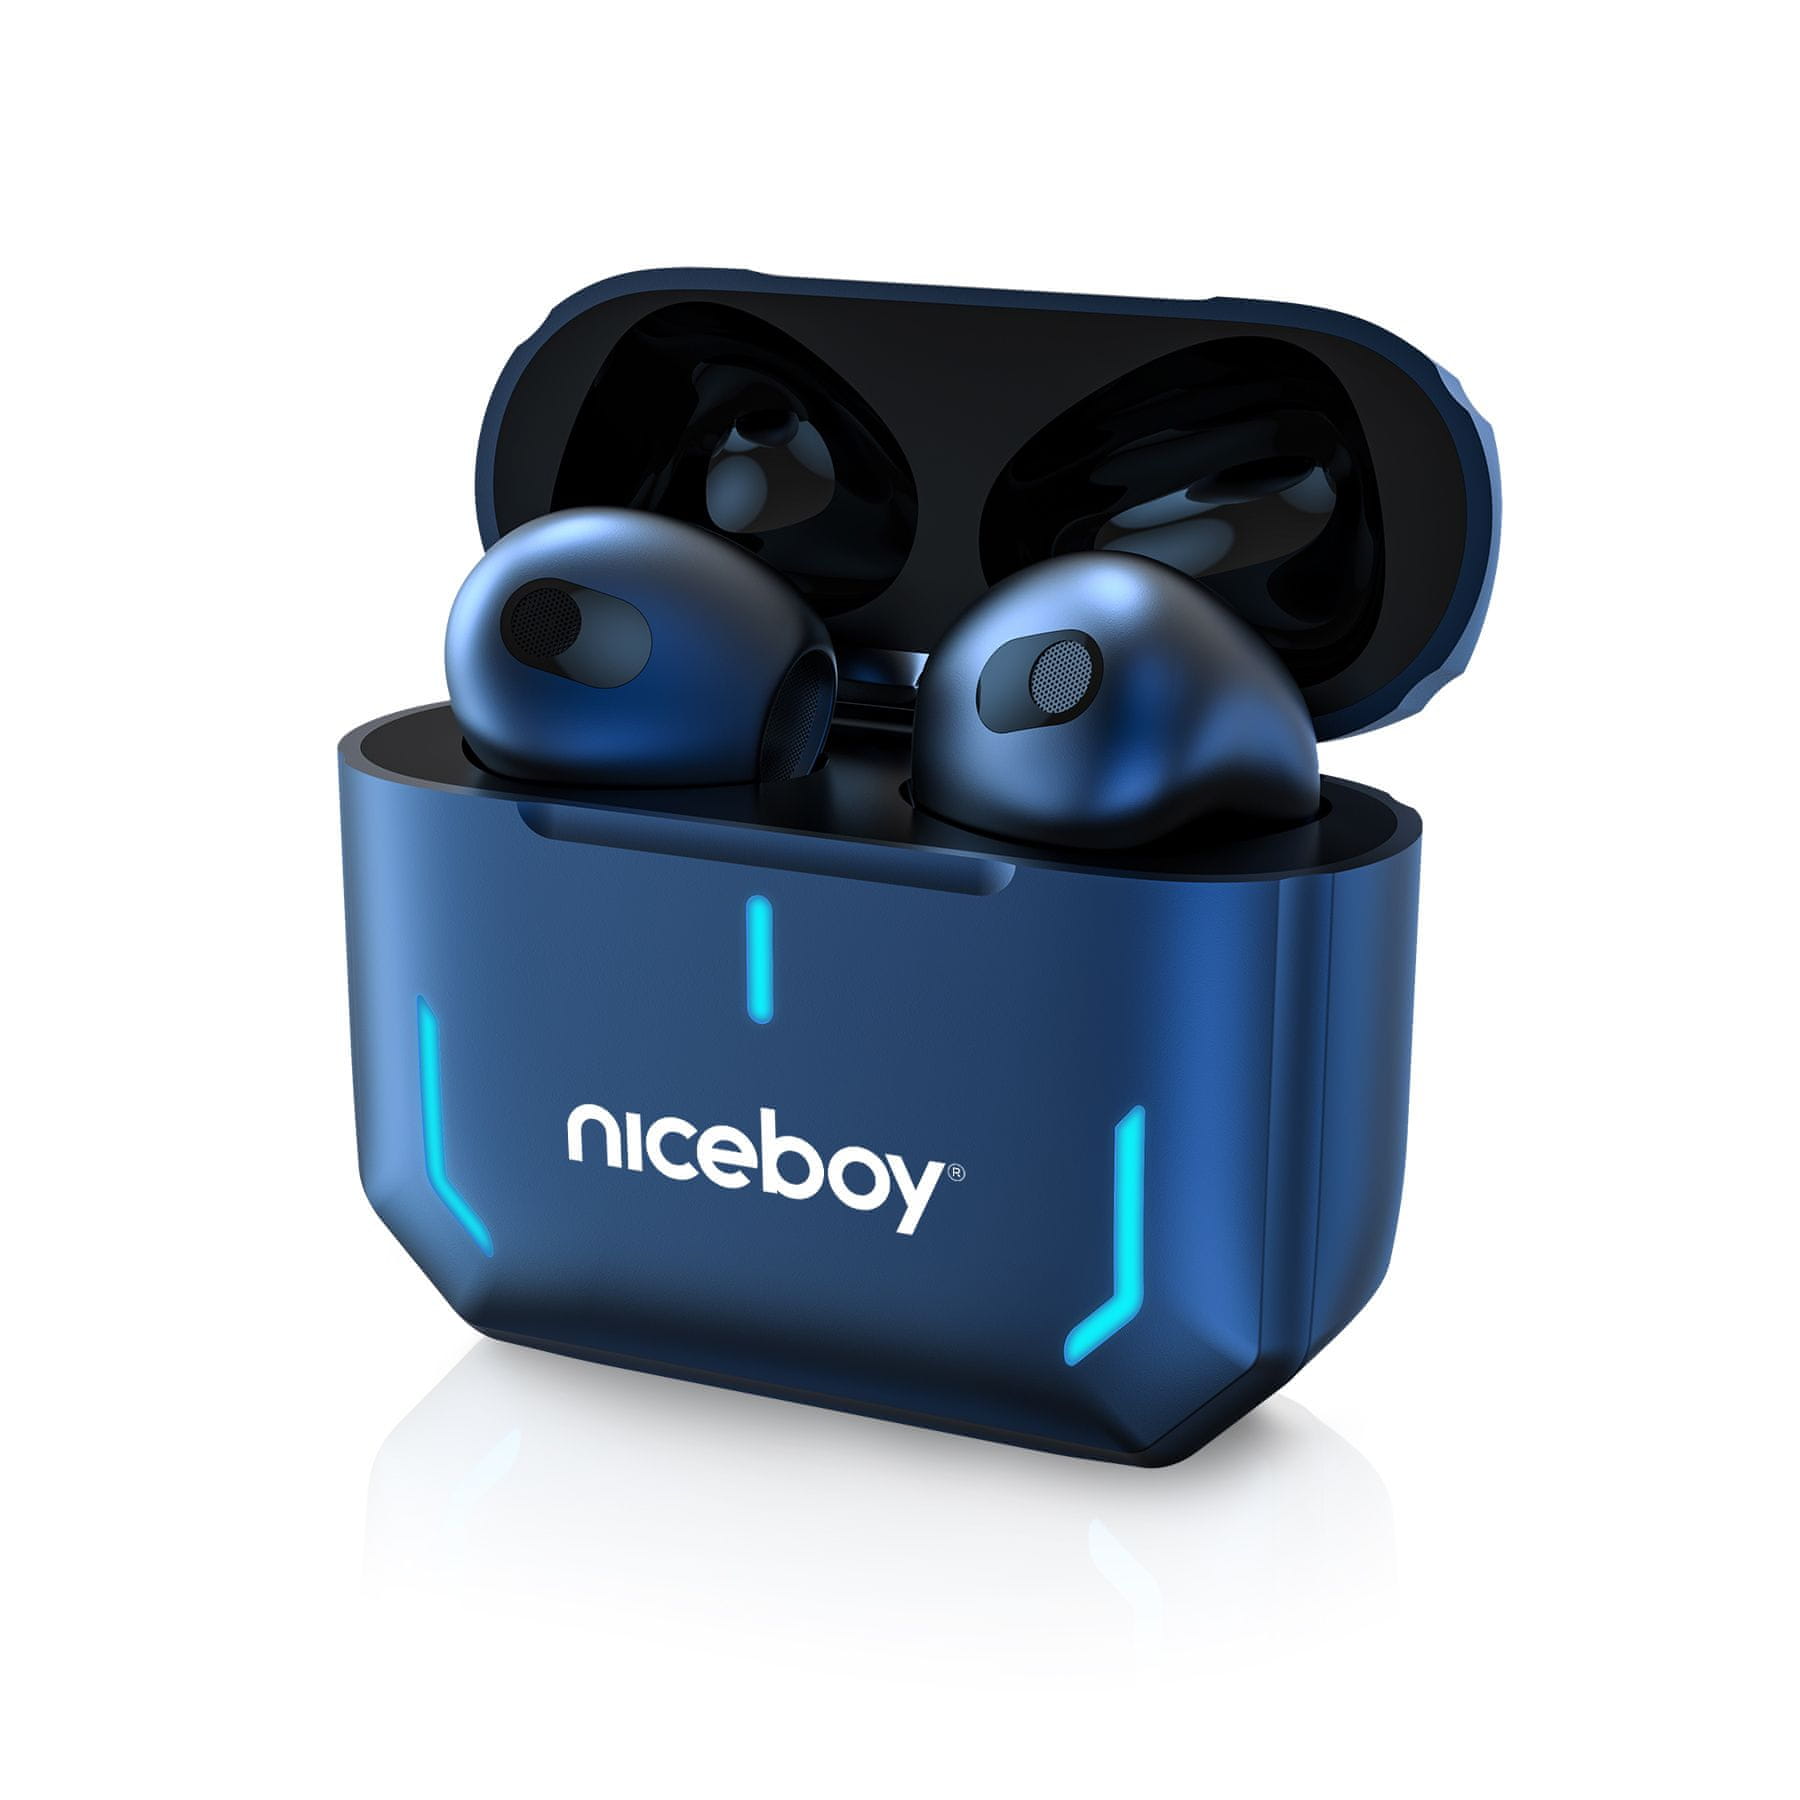  Bluetooth sluchátka niceboy hive spacepods handsfree mikrofon skvělý zvuk dlouhá výdrž na nabití odolná vodě lehká konstrukce 